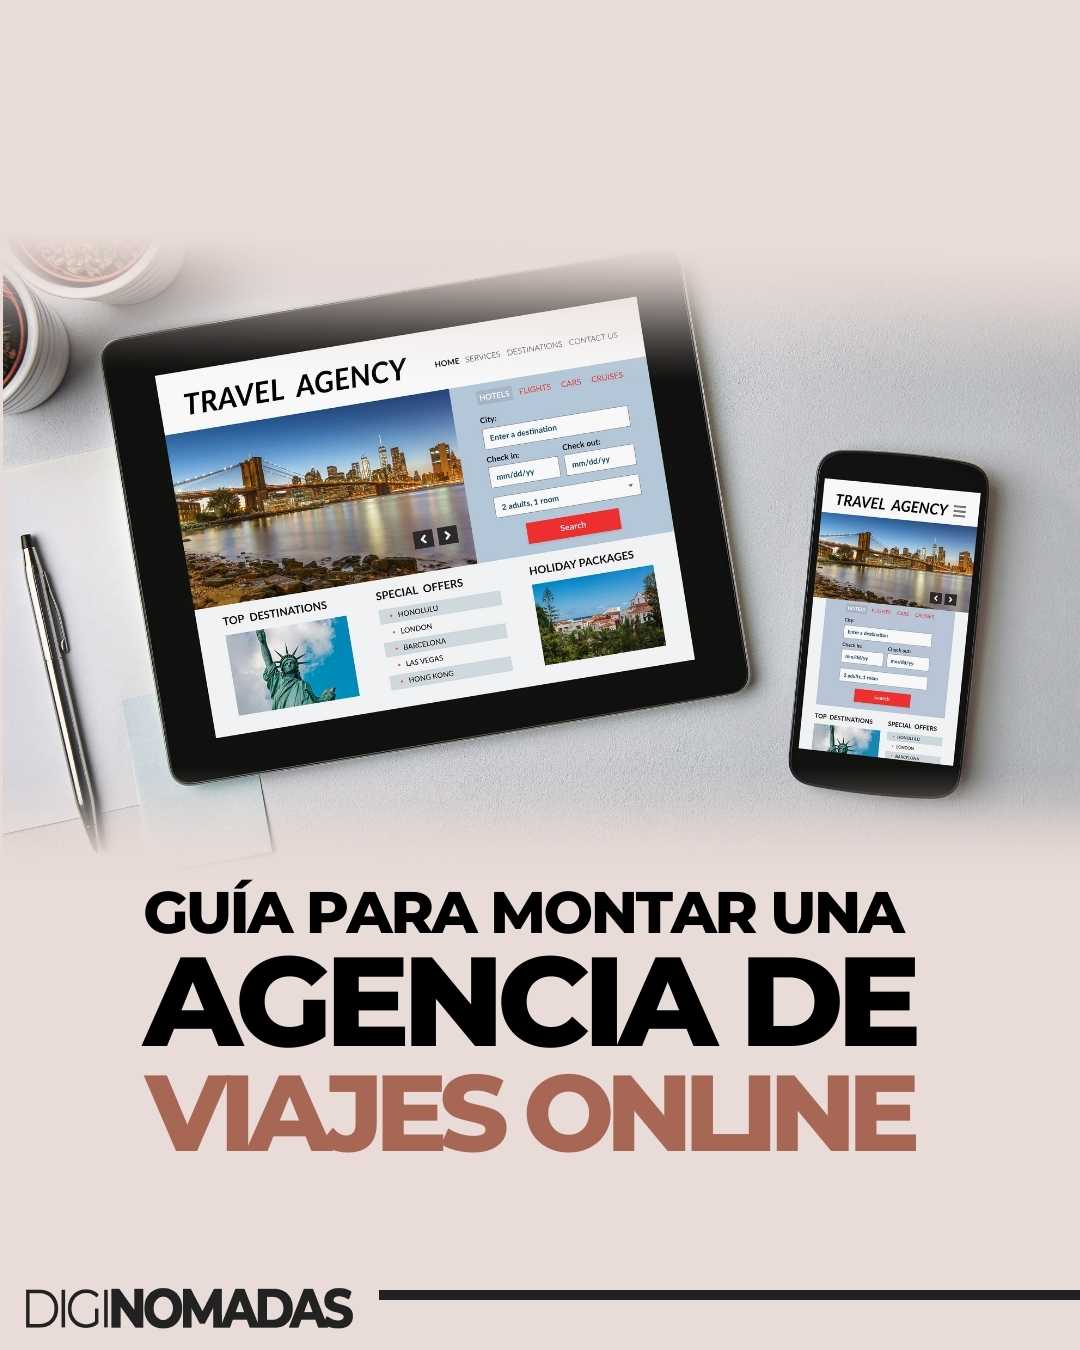 Cómo montar una Agencia de viajes o ser Agente de Viajes online